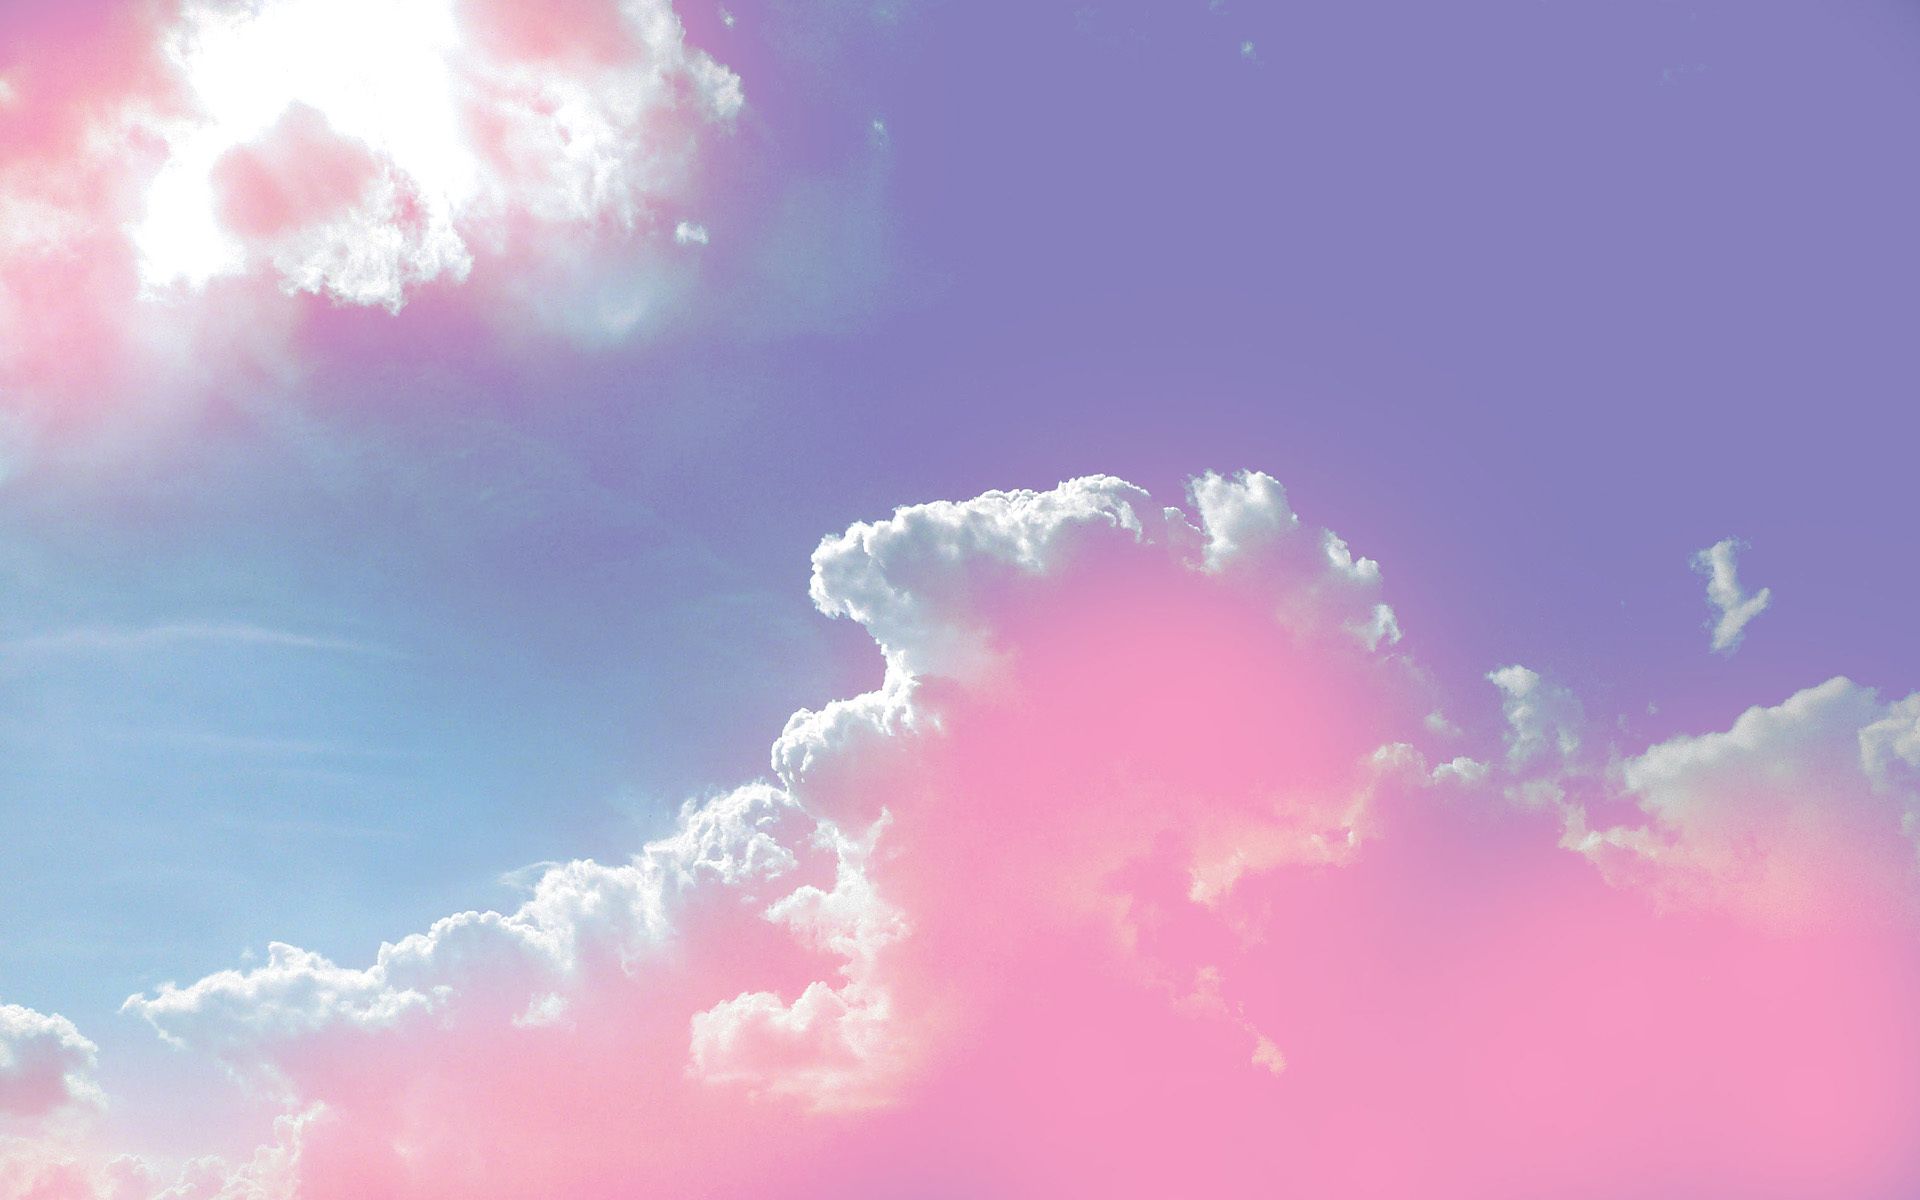 91+] Pink Sky Wallpapers - WallpaperSafari